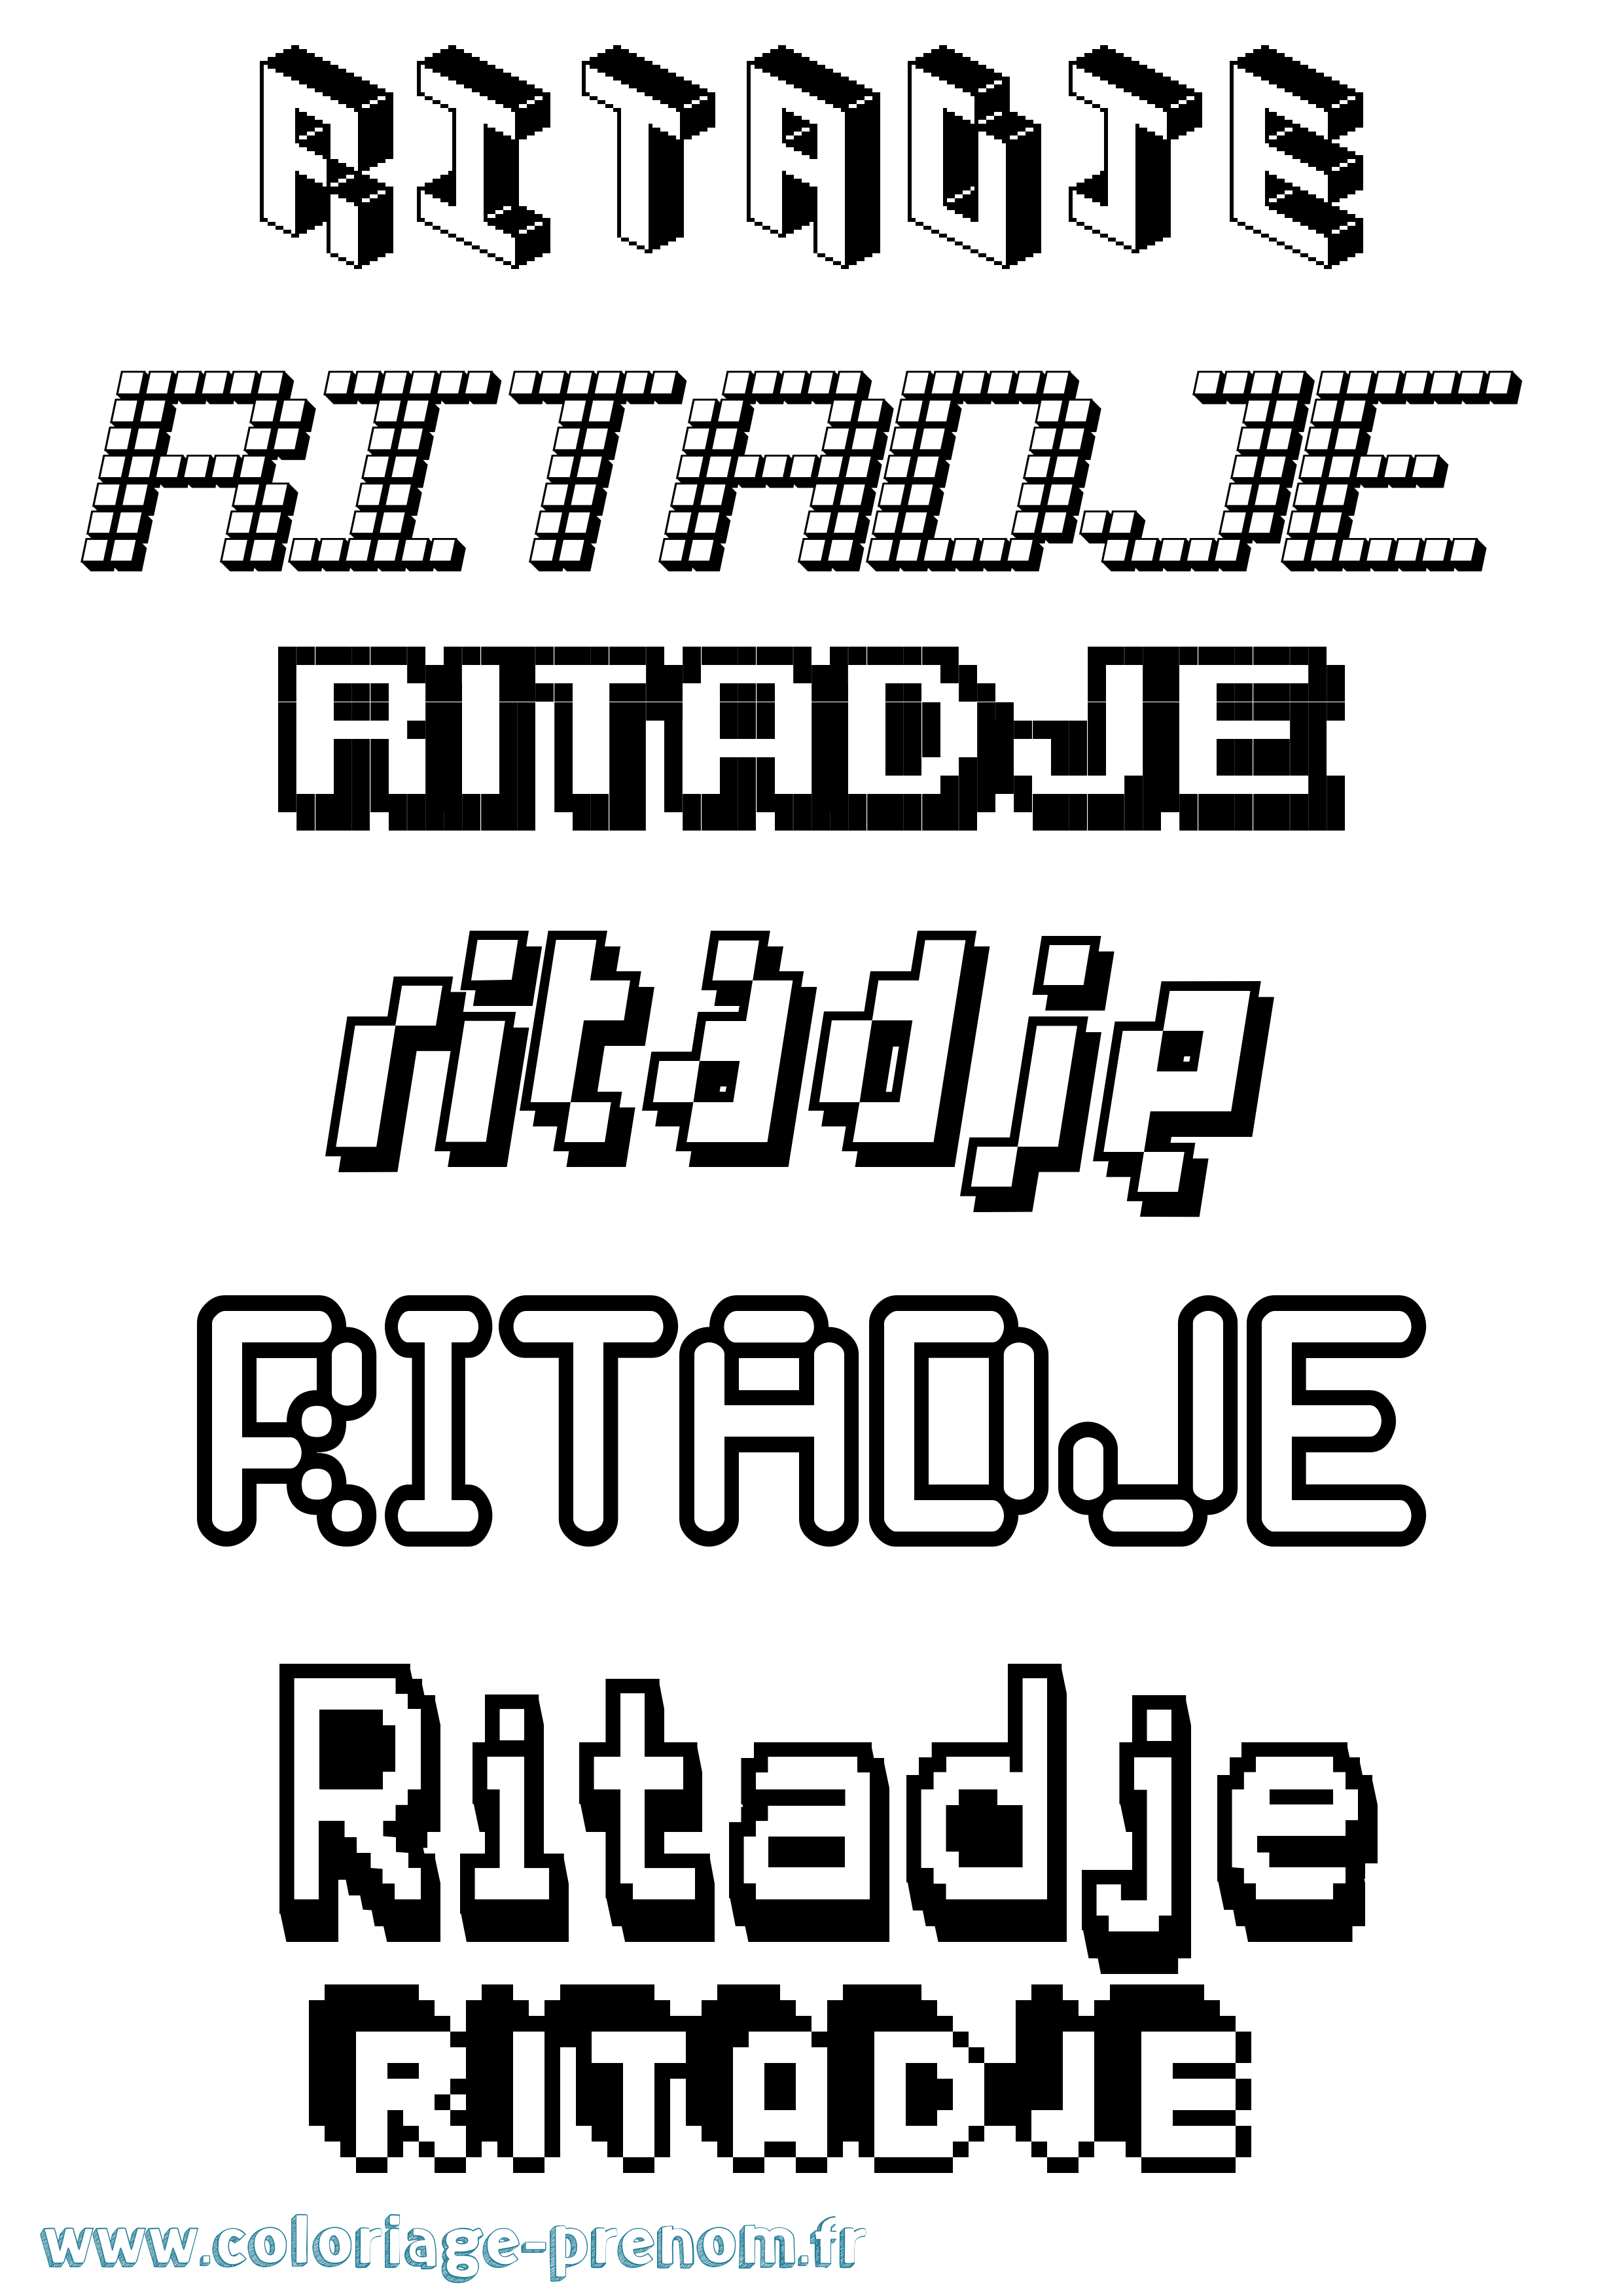 Coloriage prénom Ritadje Pixel